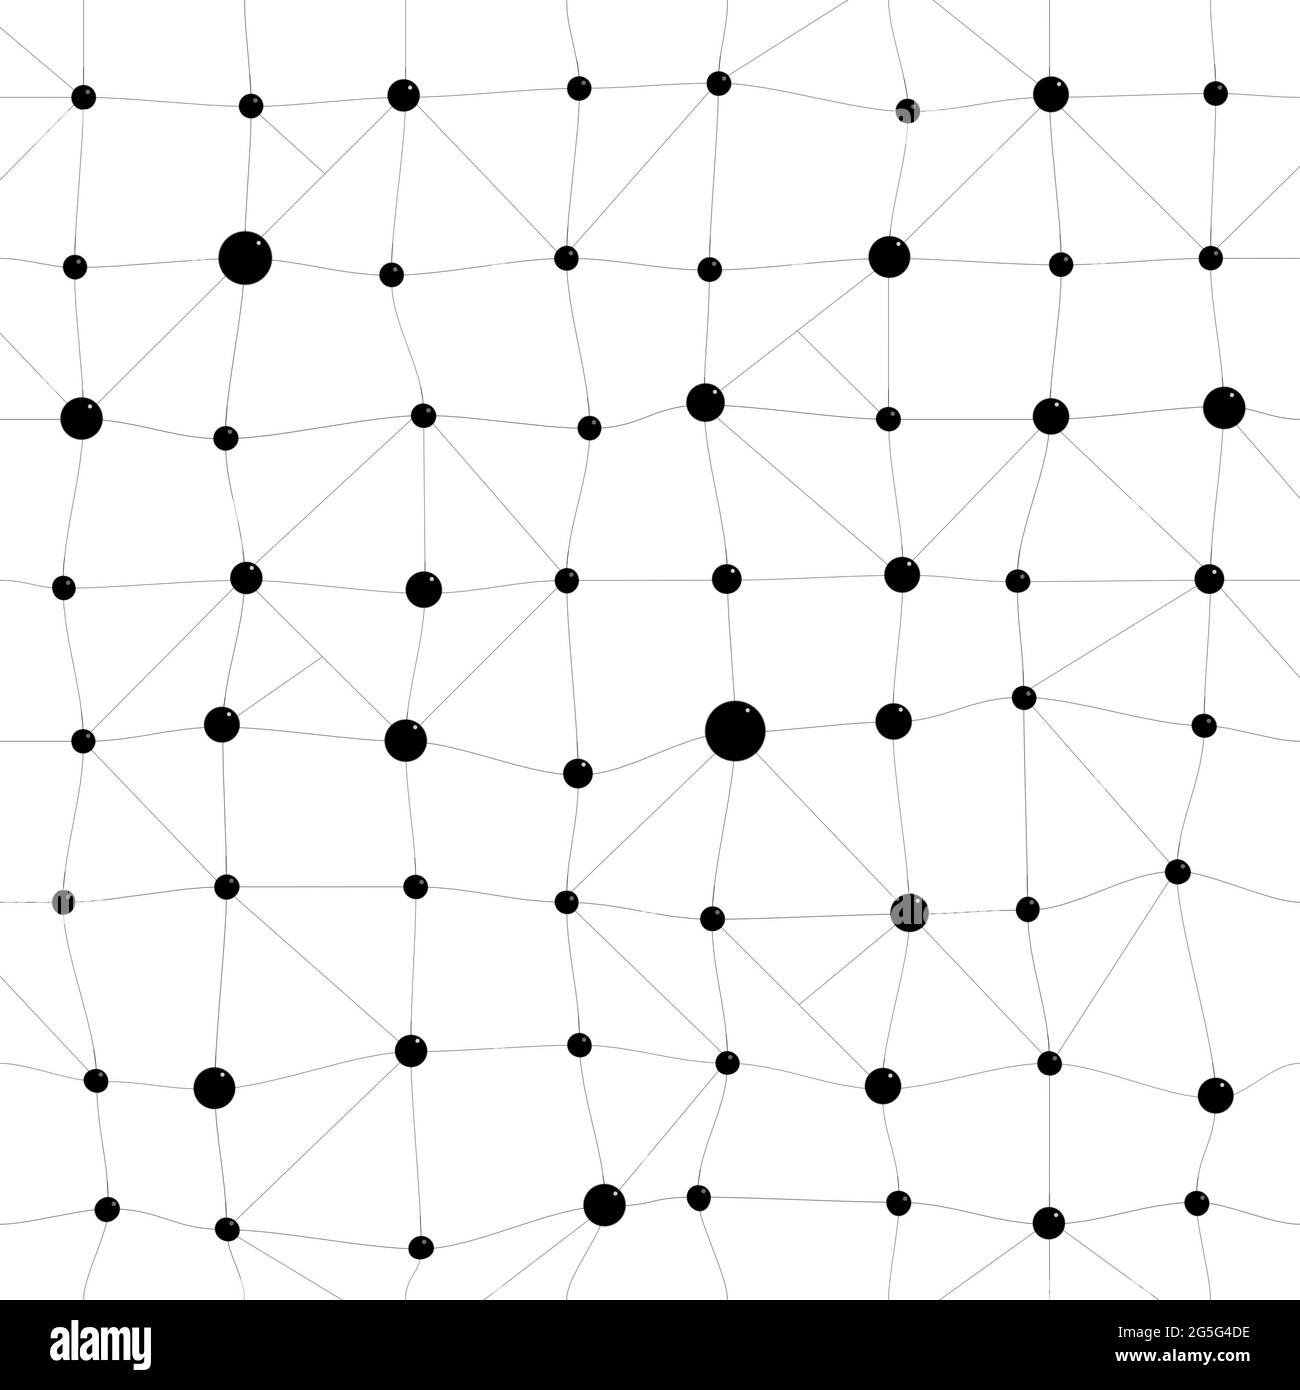 Quadratisches, verdrehtes Muster oder Raster aus schwarzen Punkten und Linien auf weißem Hintergrund. Abstrakte Verbindung, Chemie, Daten- und Molekülhintergrund, nahtloses Muster. Stockfoto